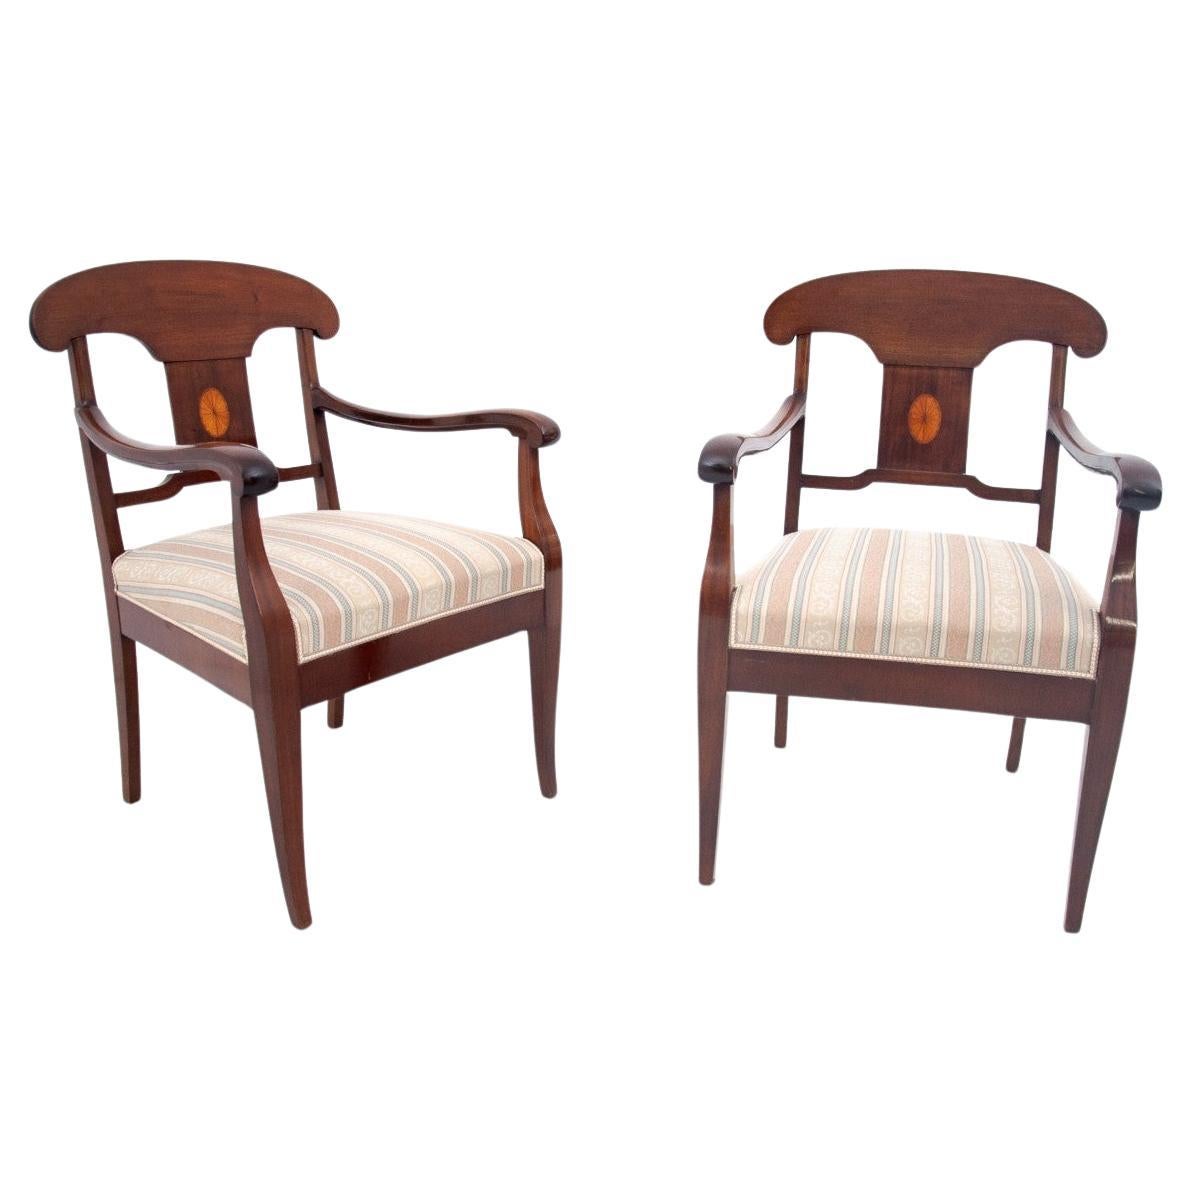 Ein Paar antike Sessel aus der Zeit um 1860, Nordeuropa.